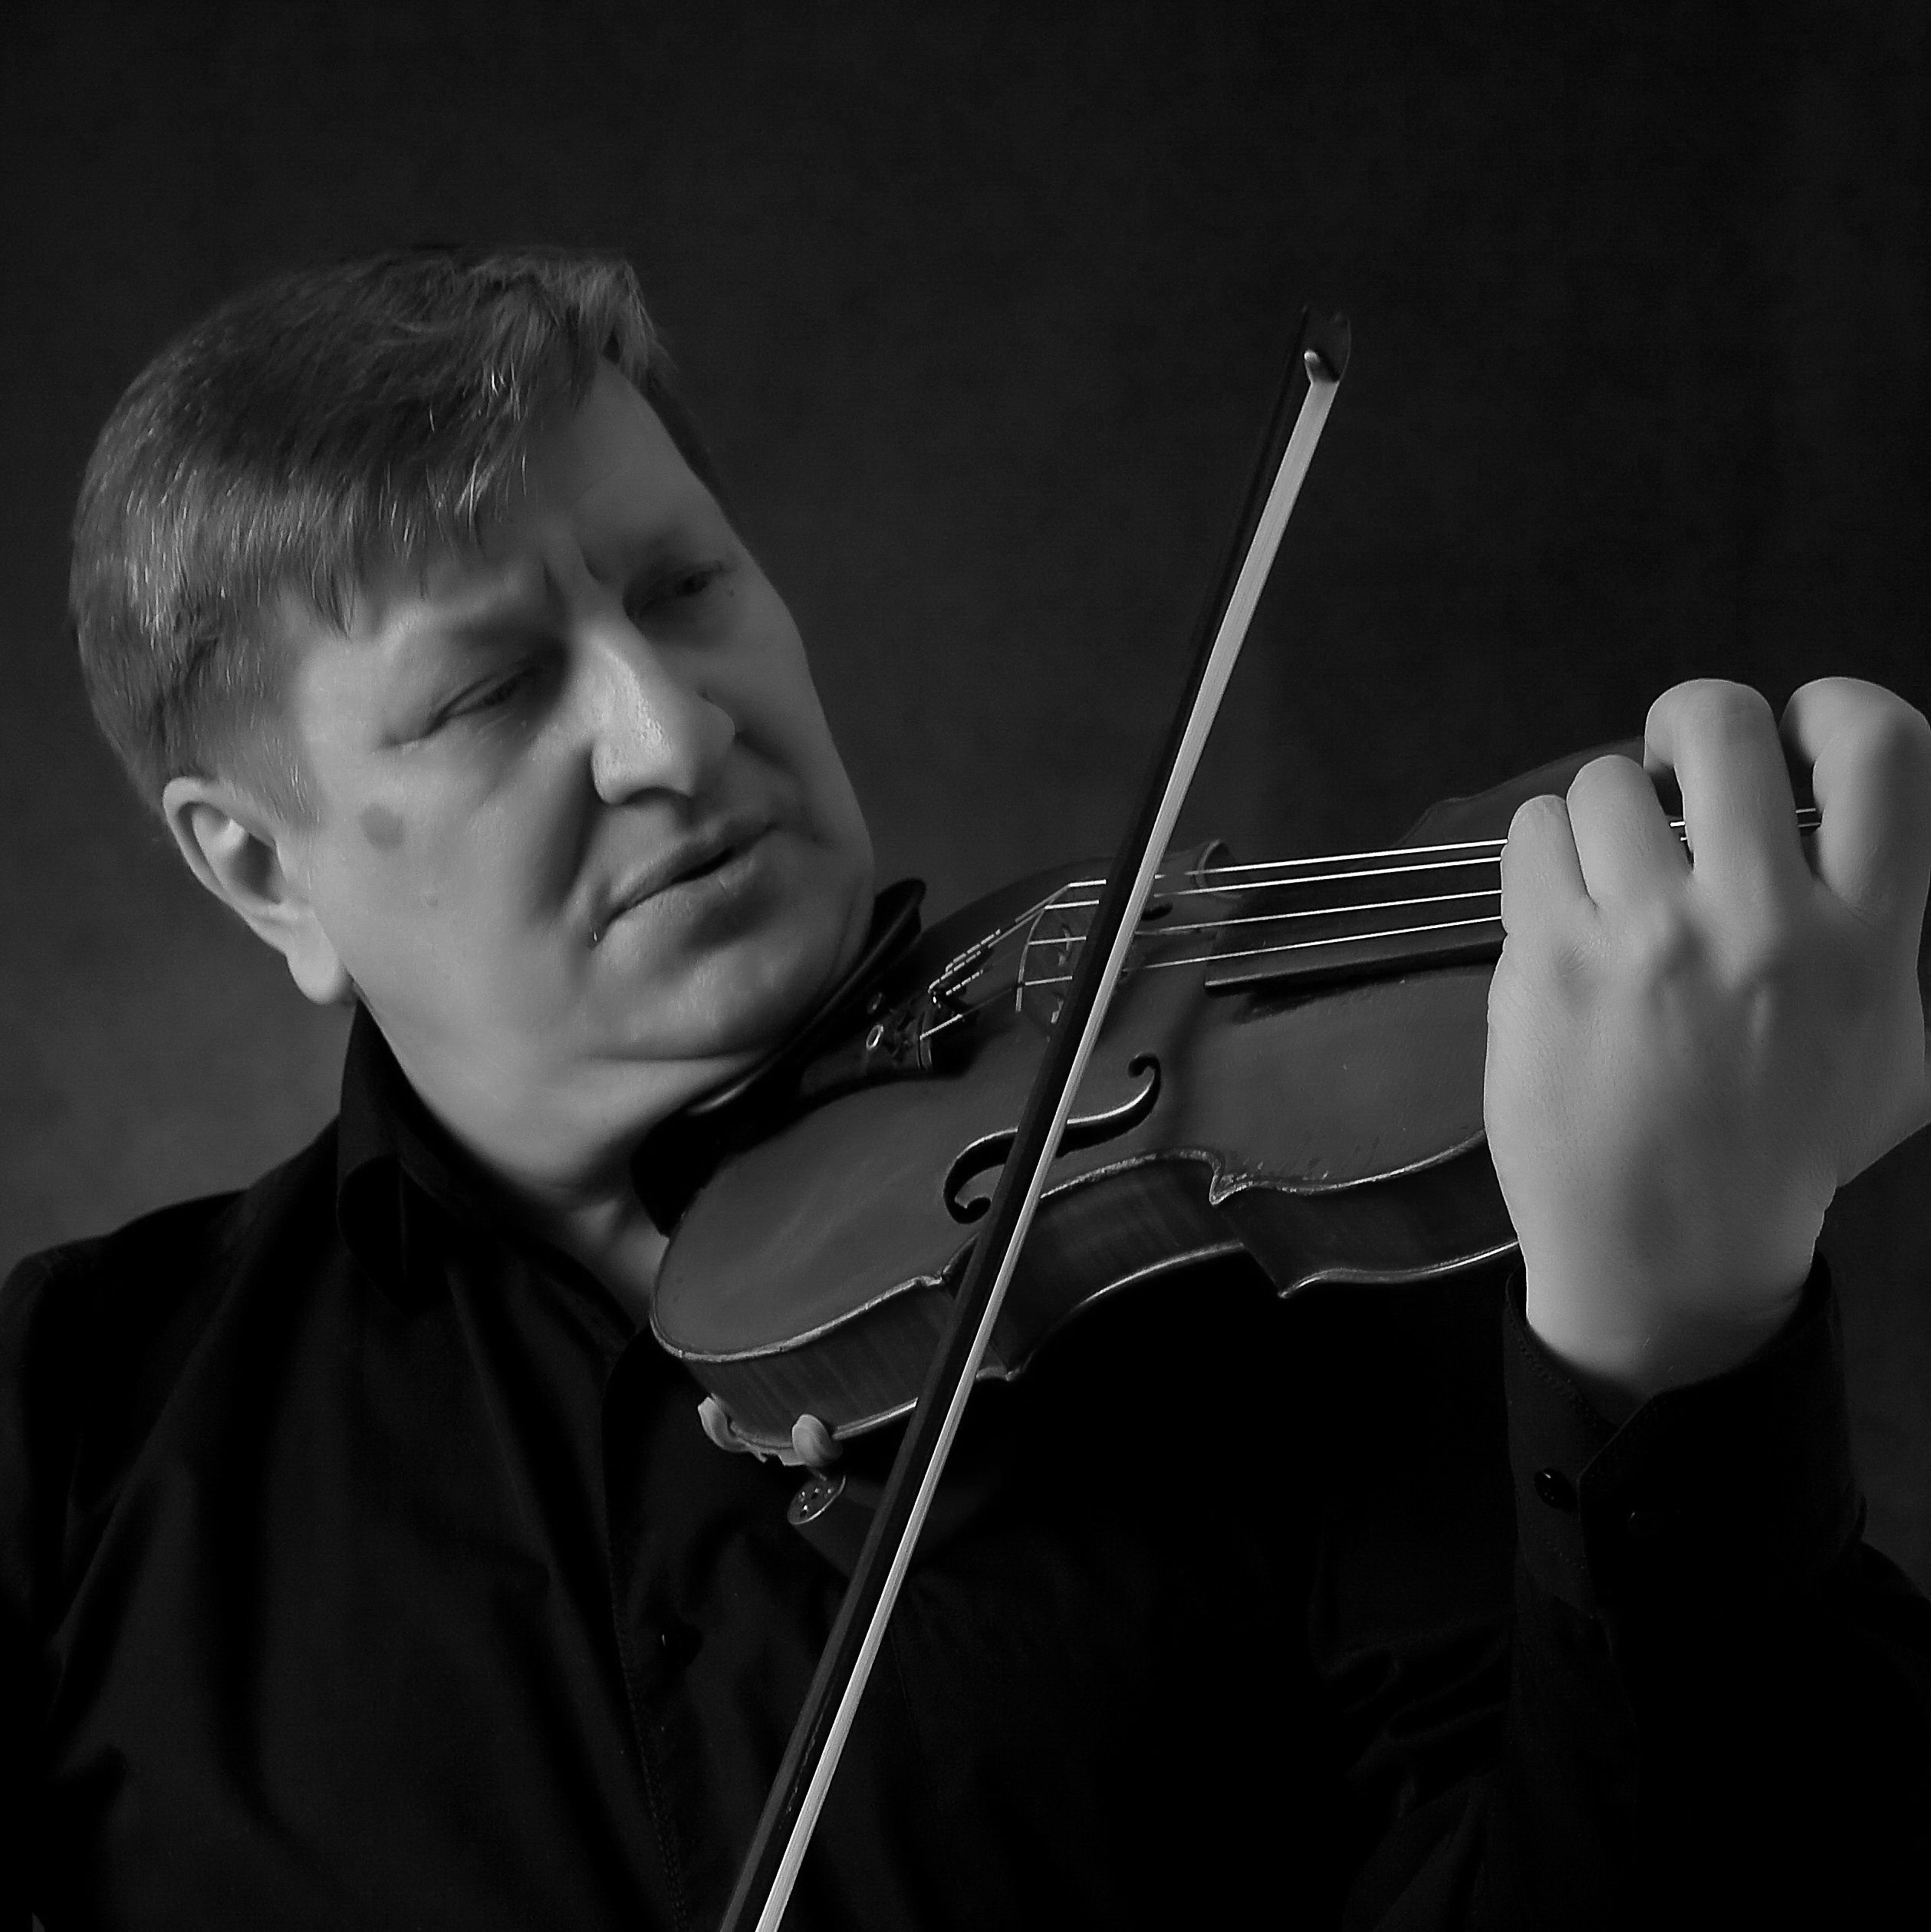 Petroskoilaisen viulistin Jevgeni Terehovin polte viulujen valmistamista kohtaan syttyi silloin, kun hän sai käsiinsä aidon Stradivariuksen. Kuva: Jevgeni Terehovin arkistosta